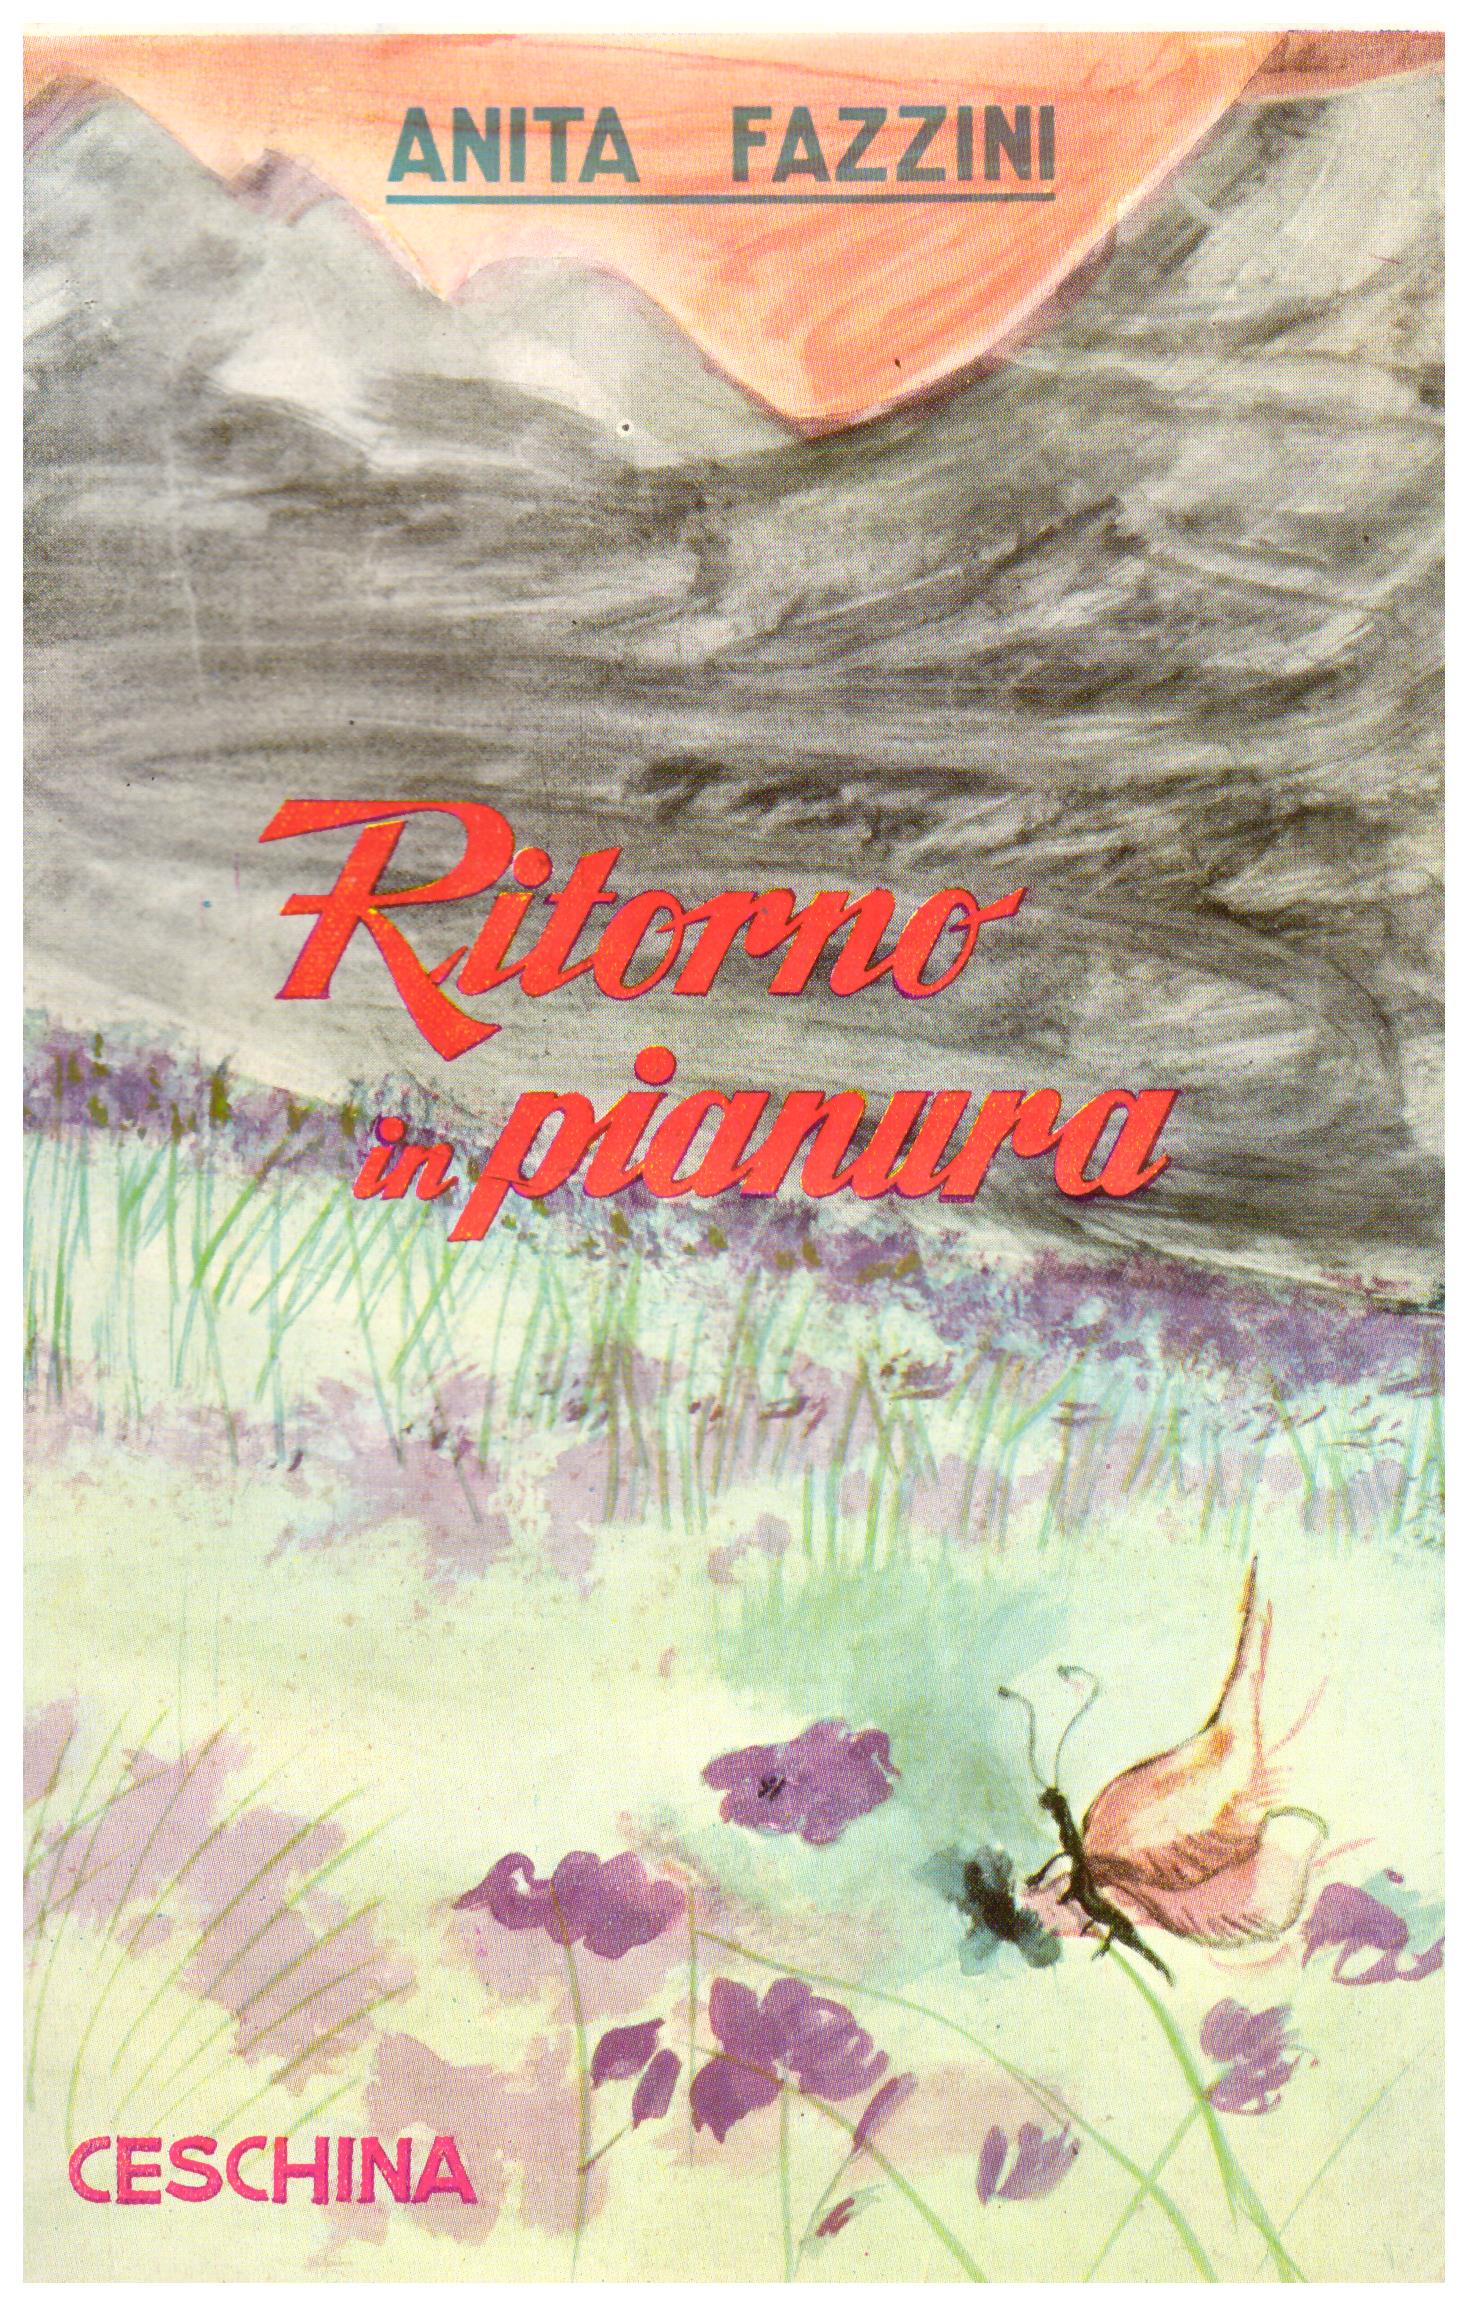 Titolo: Ritorno in pianura  Autore: Anita Fazzina Editore: Ceschina, 1958